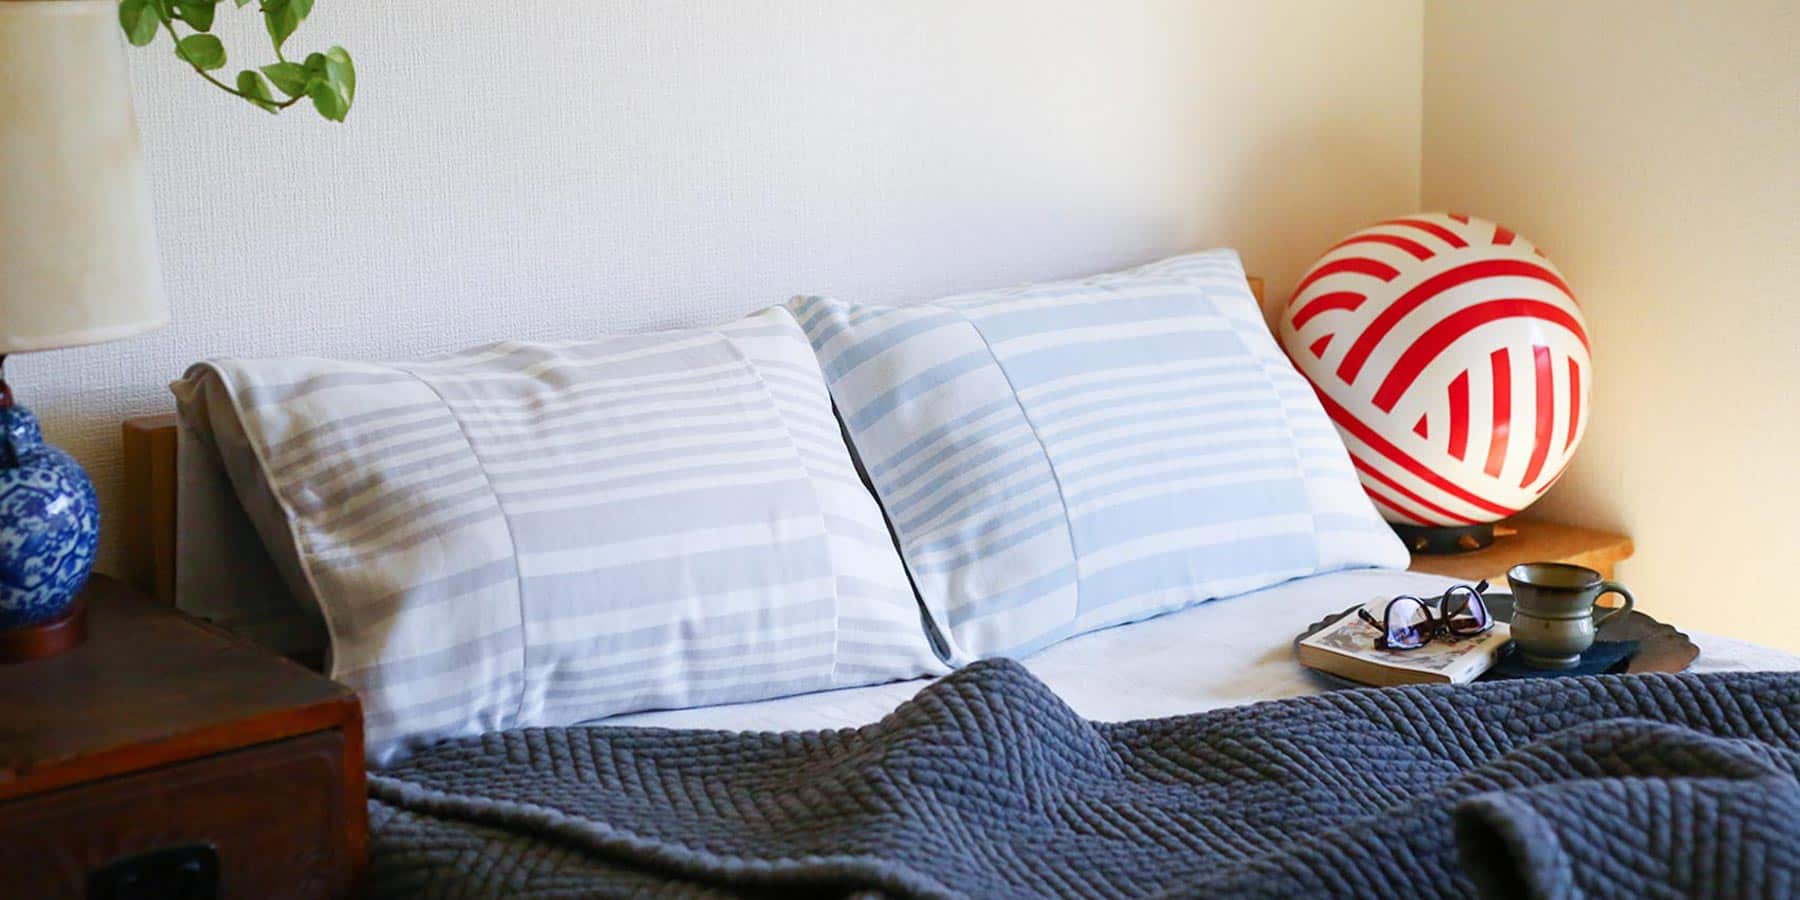 maku-wrapを巻いた枕があるベッドのイメージ写真